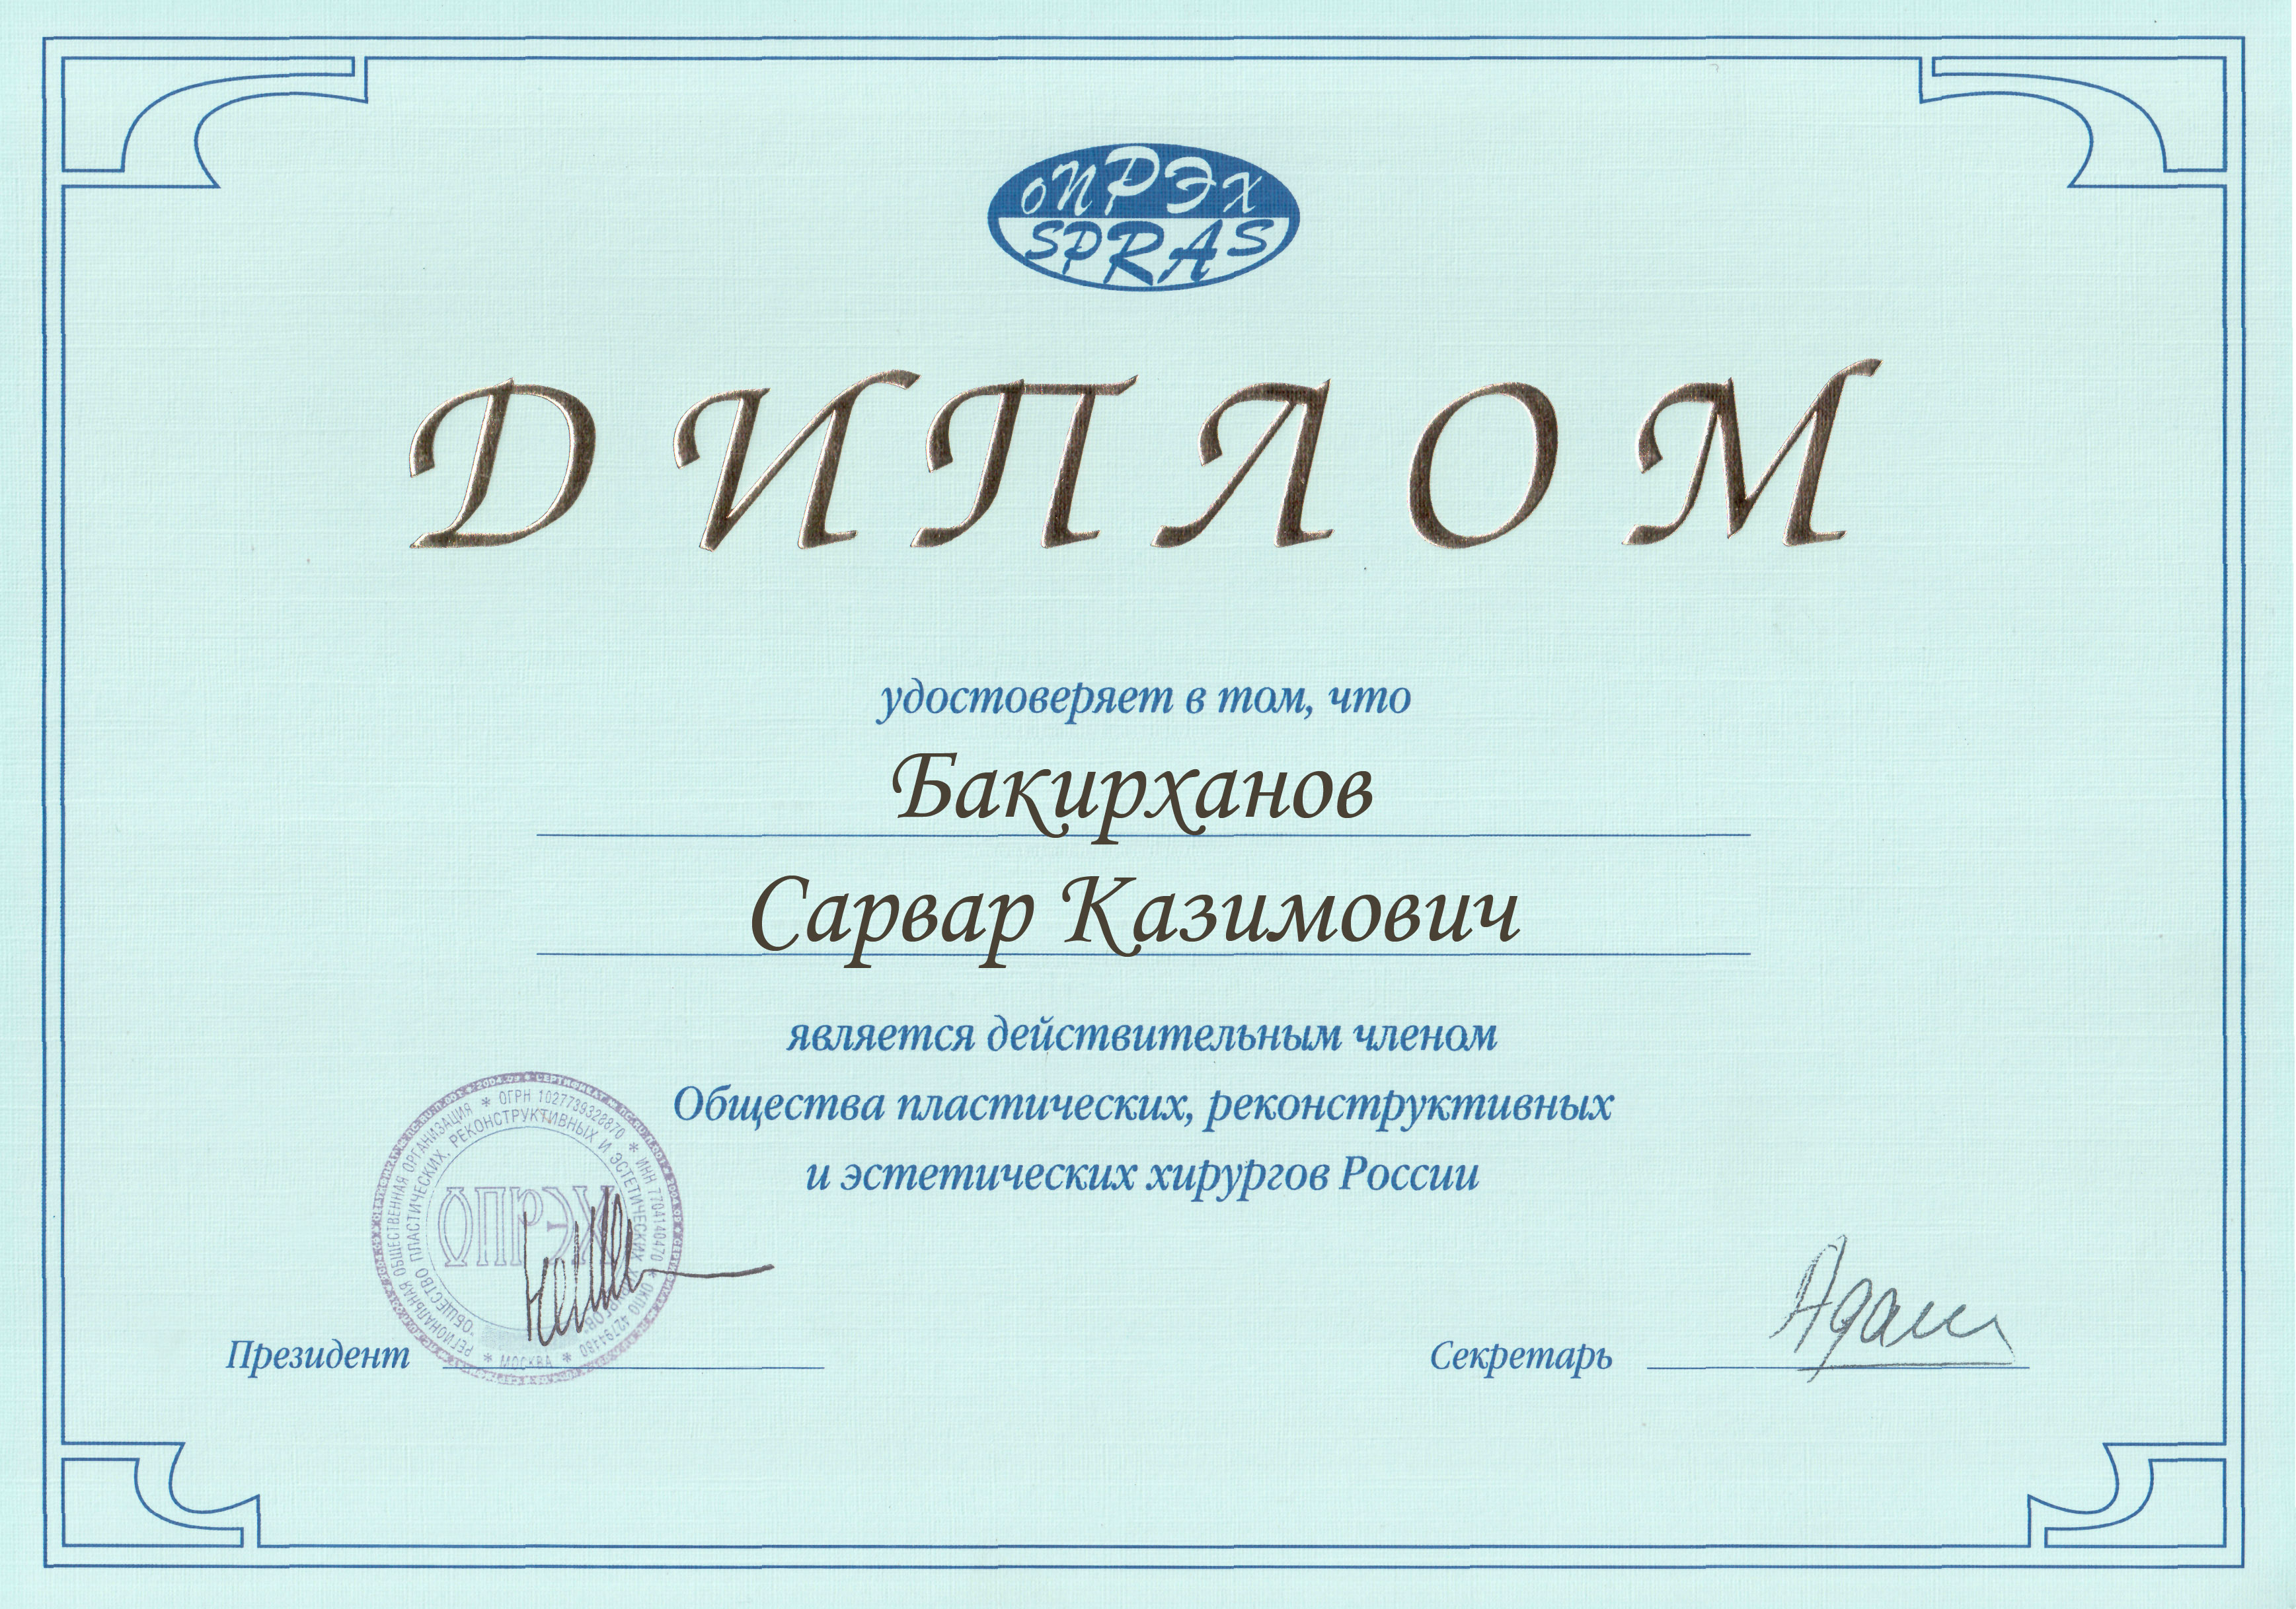 Диплом Общества пластических, реконструктивных и эстетических хирургов России